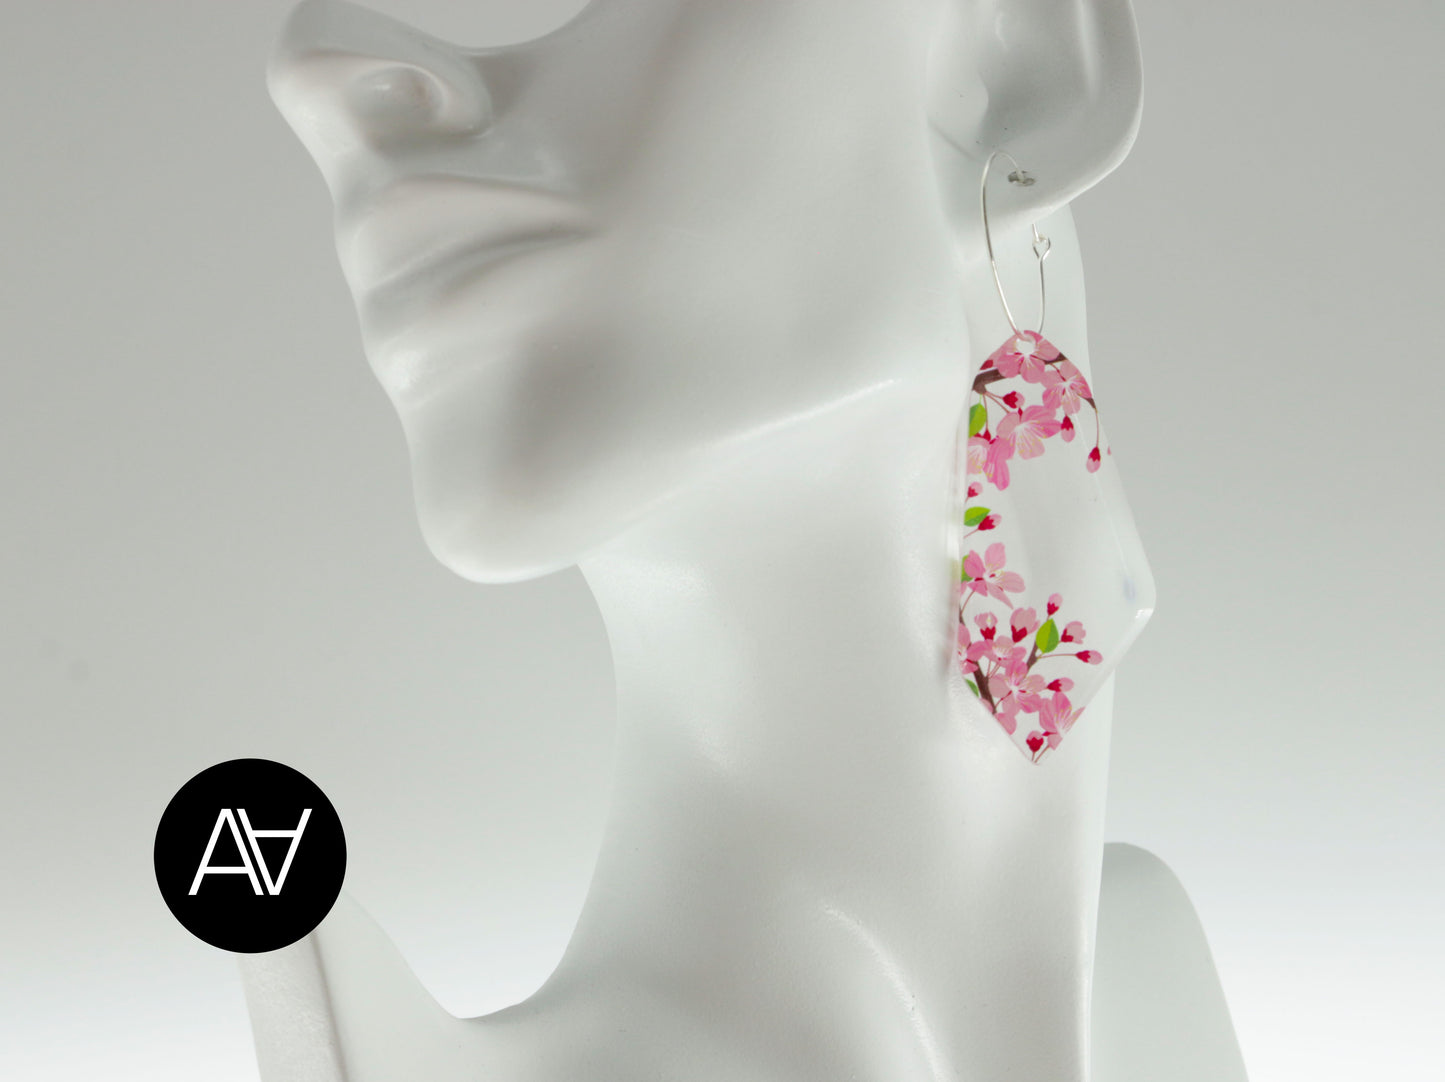 Acrylic Glass Earrings / Cherry Flower Style Earrings / Pink Earrings